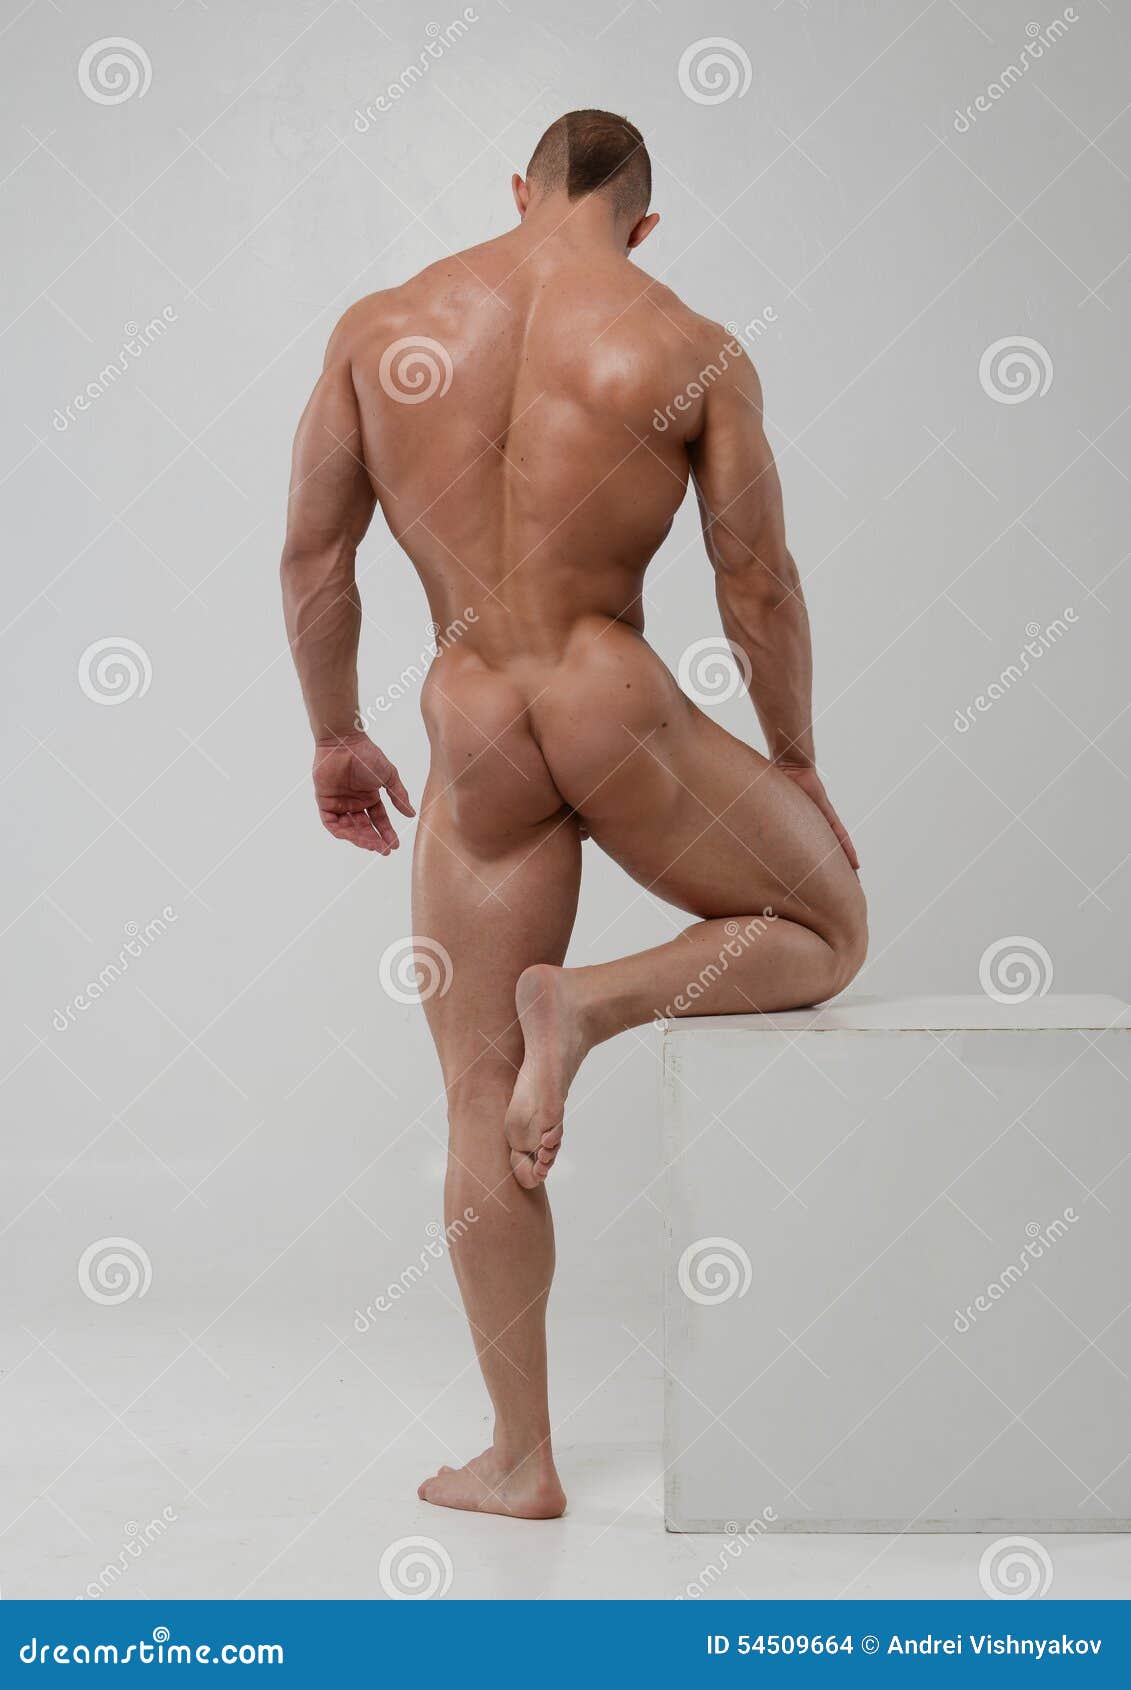 amanda lynn porter share naked male fitness models photos